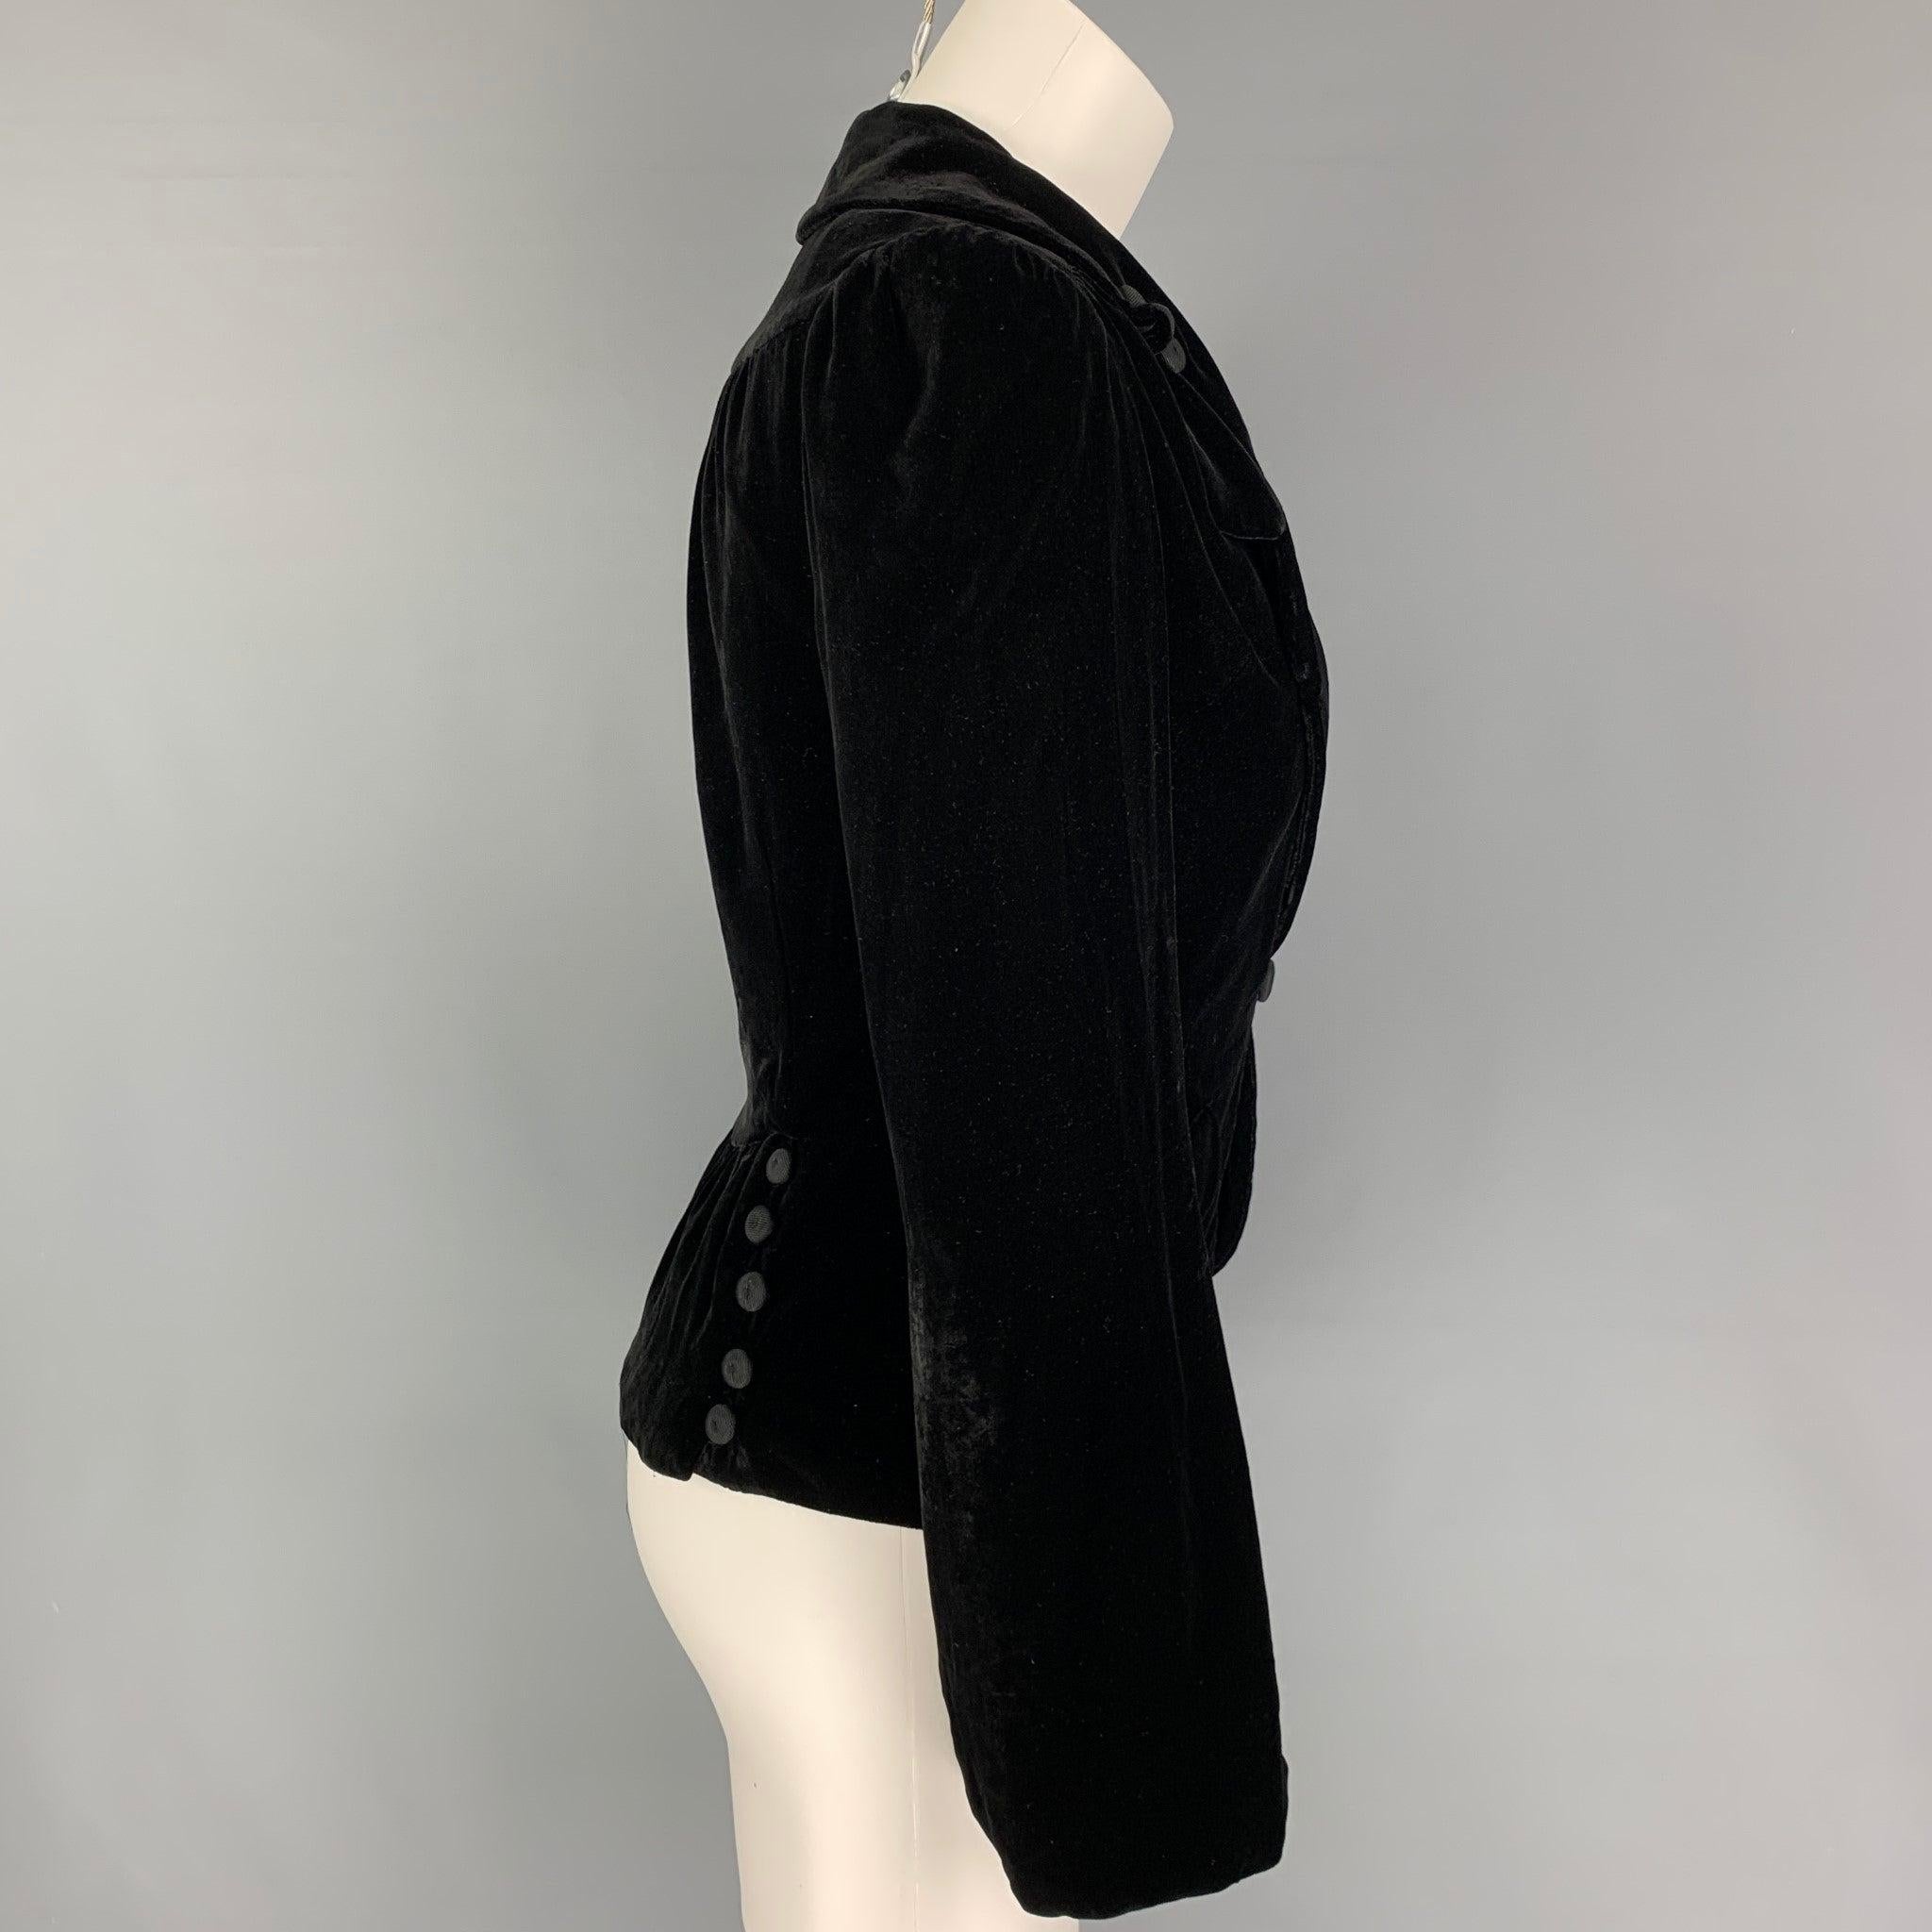 La veste MARC JACOBS est réalisée en velours noir mélangé à de la rayonne et présente un revers à cran, des poches à rabat, des détails boutonnés et une fermeture à bouton unique.
Très bien
Etat d'occasion. 

Marqué :   2 

Mesures : 
 
Épaule : 14